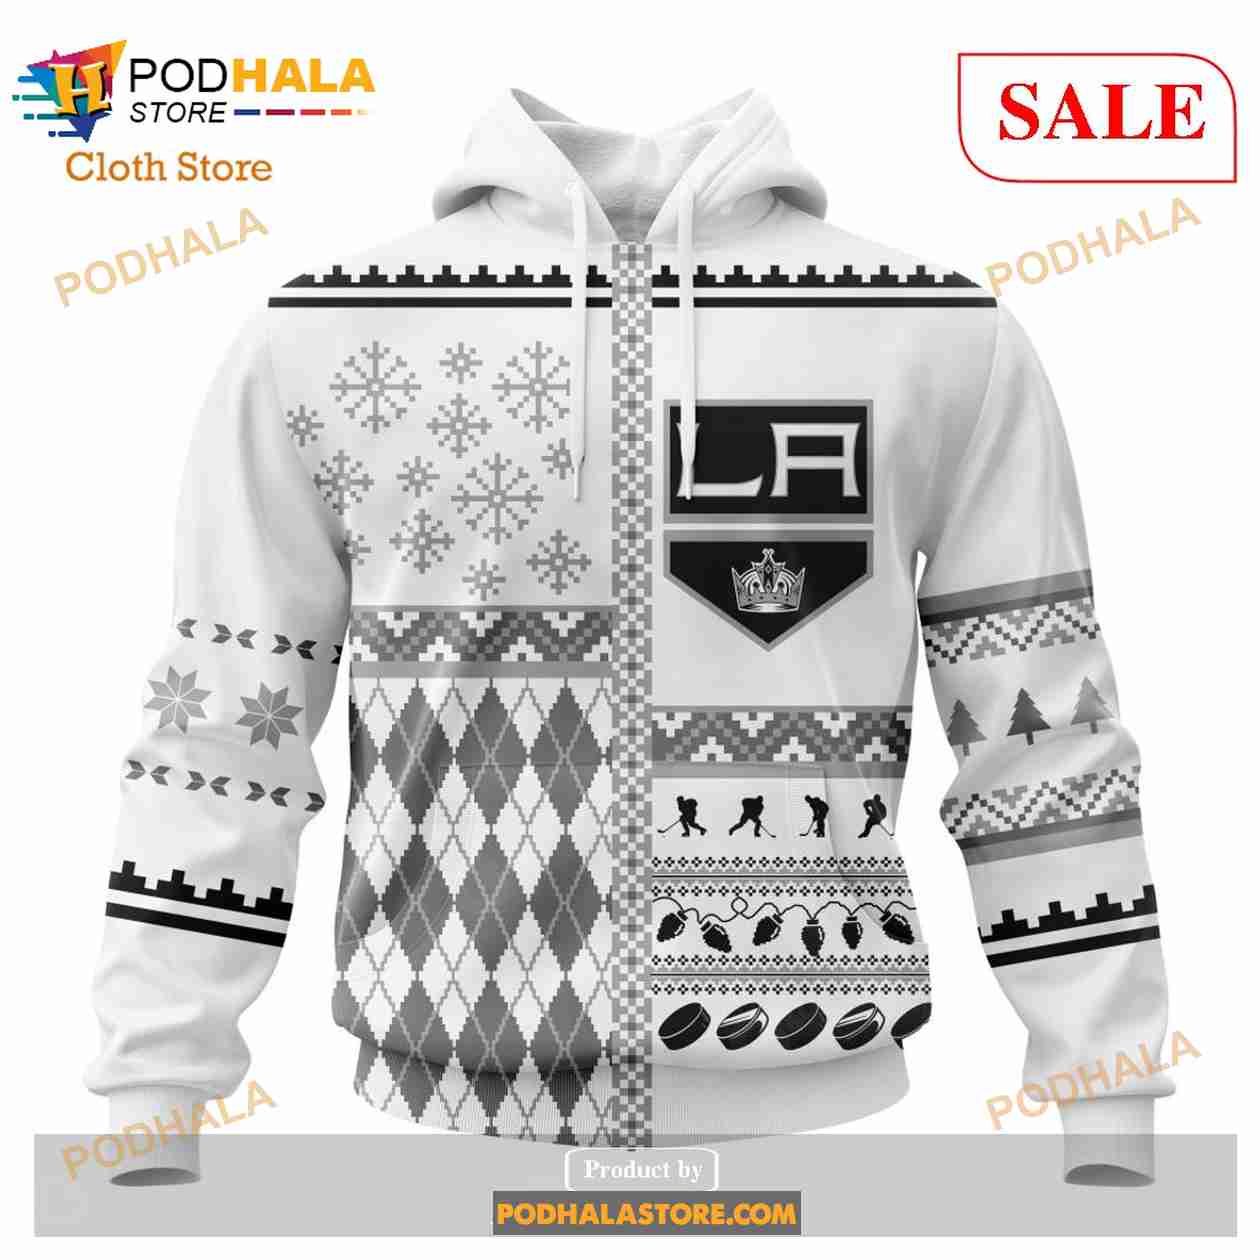 NHL Los Angeles Kings Hoodie Sweatshirt